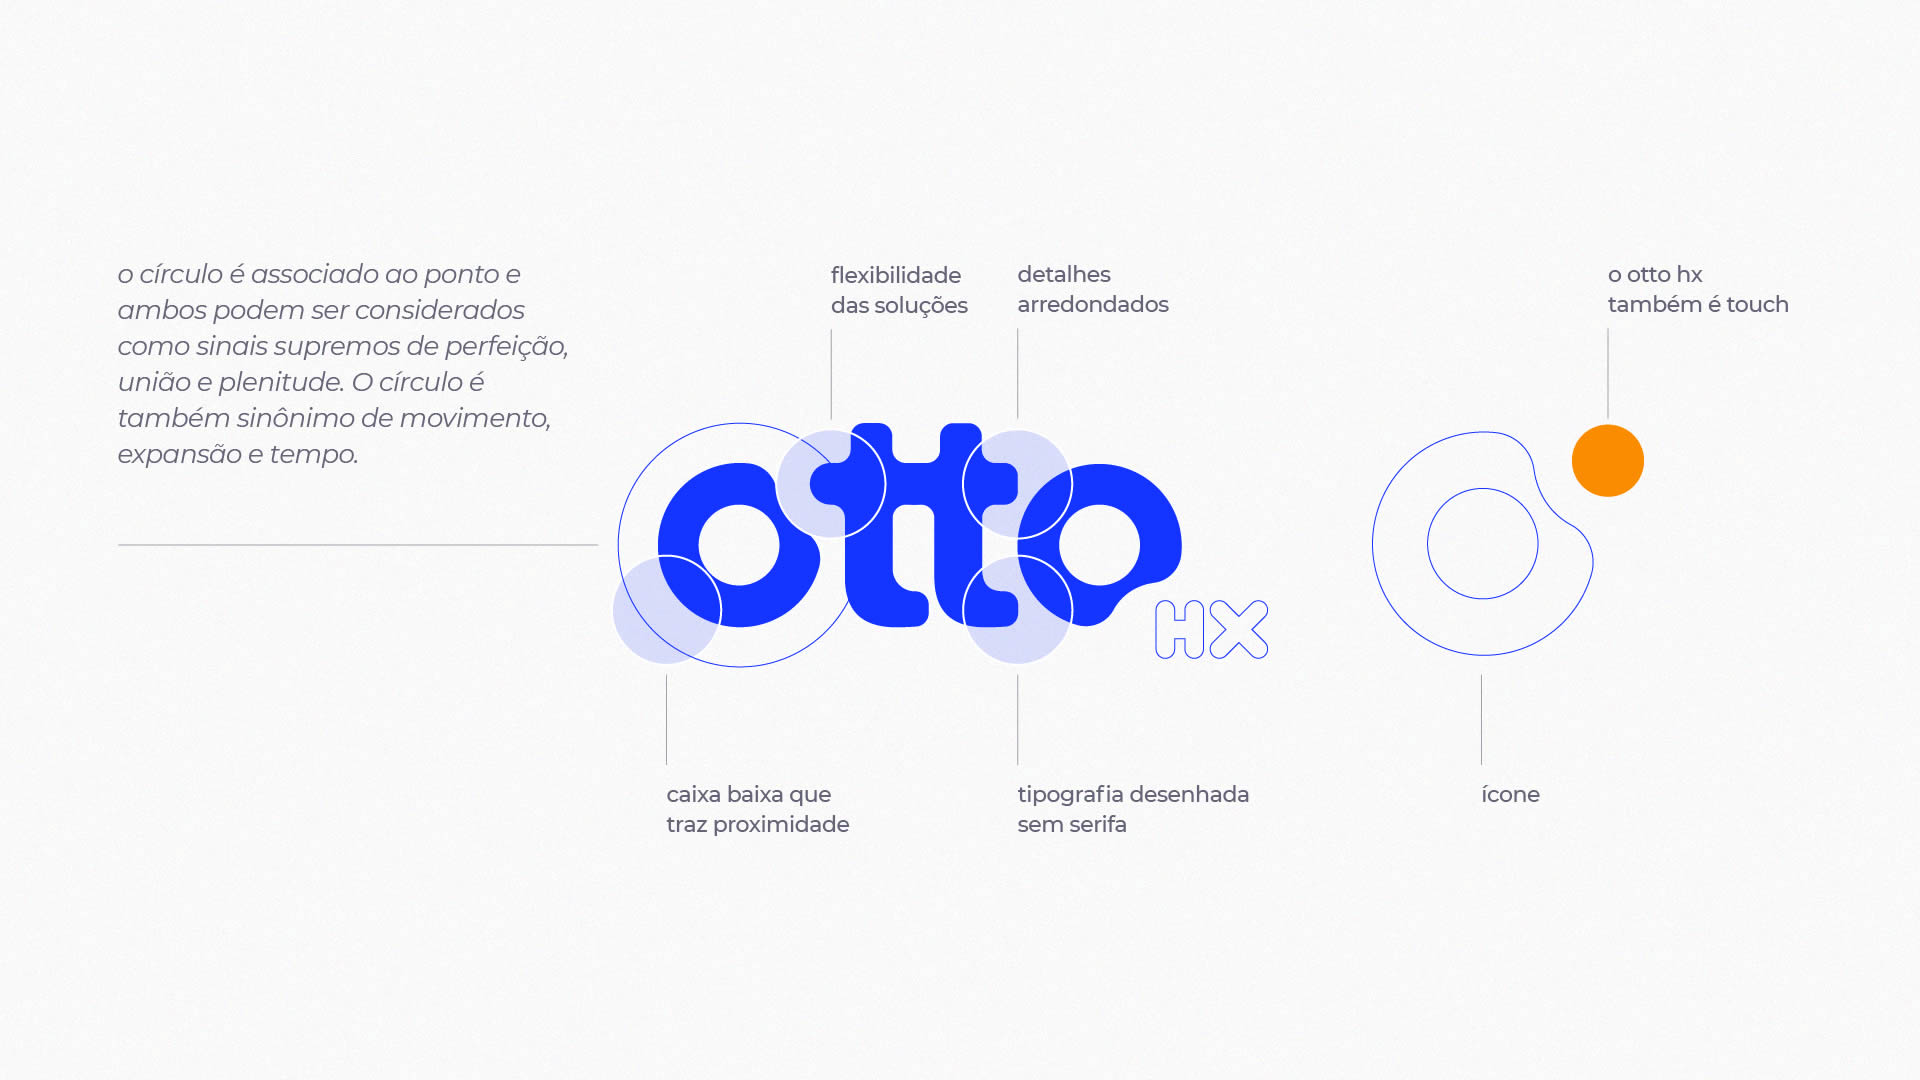 Otto hx, Logotipo, Agência IH9